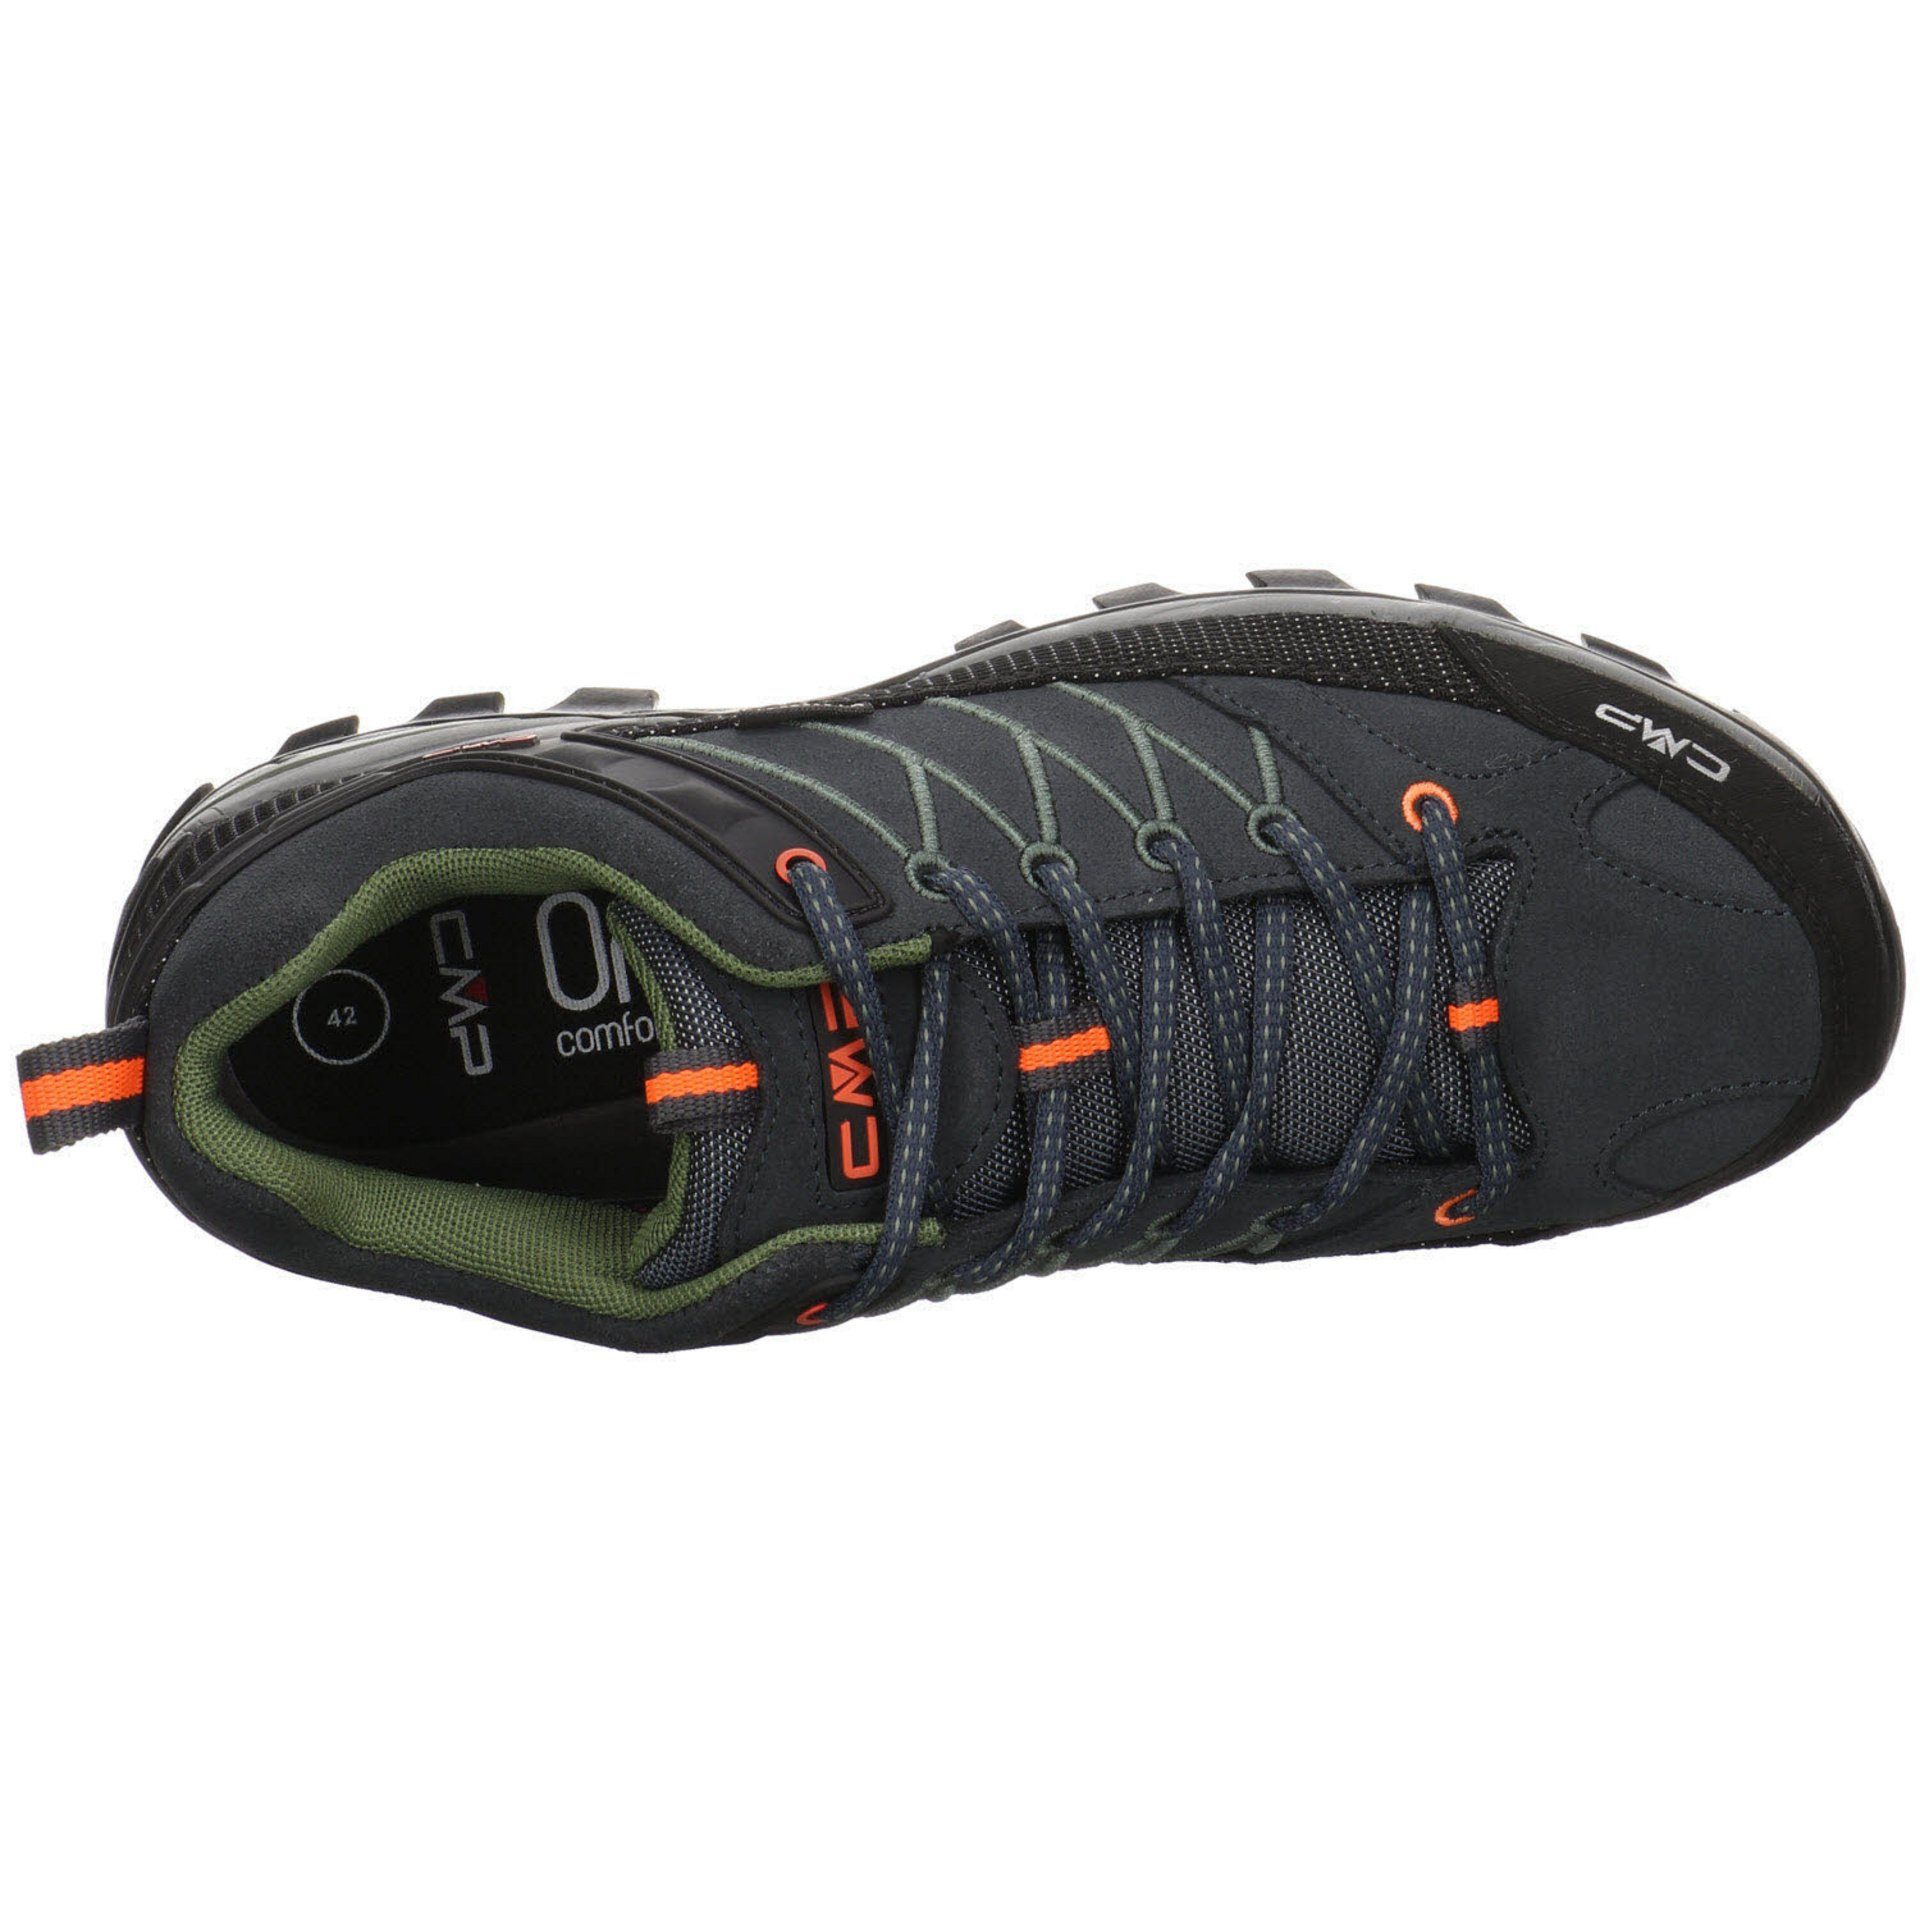 CMP Herren Outdoor Schuhe Rigel Outdoorschuh Low Grau Leder-/Textilkombination Outdoorschuh (03201805)